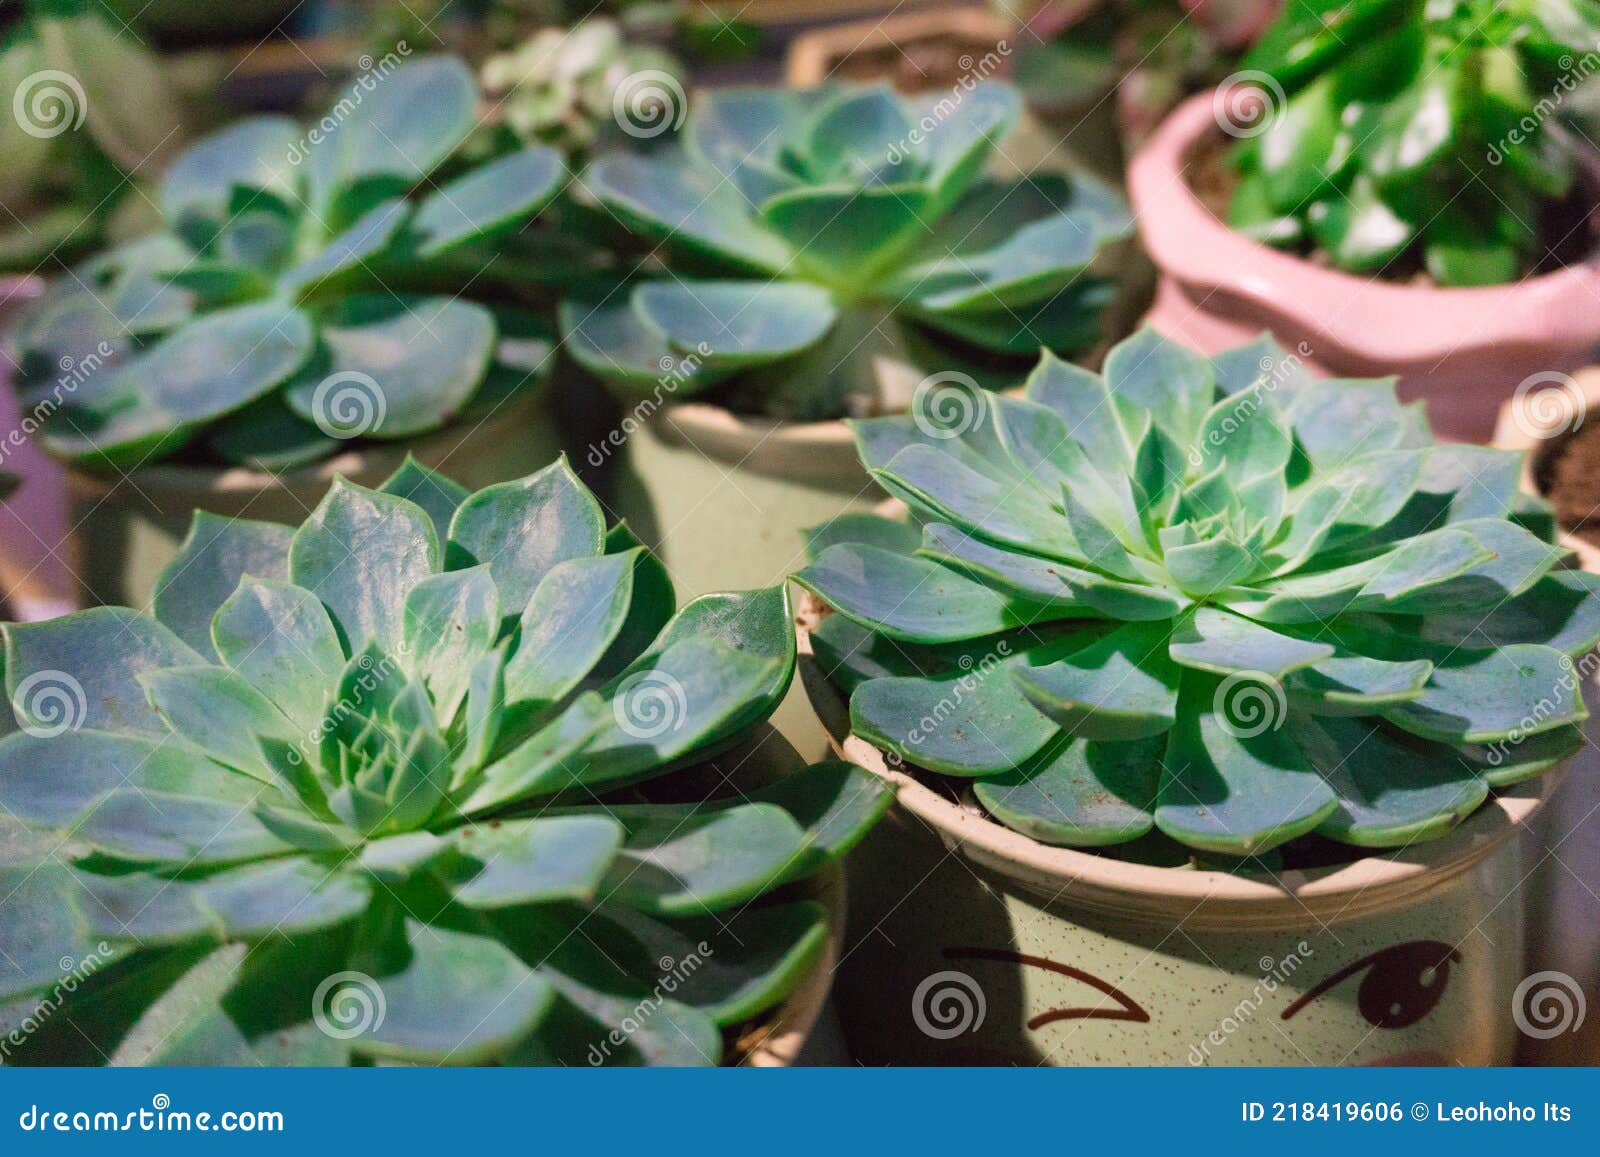 https://thumbs.dreamstime.com/z/fond-naturel-cactus-plante-succulente-belle-echeveria-floraison-plantes-succulentes-vue-du-haut-beaucoup-de-belles-en-arri%C3%A8re-218419606.jpg